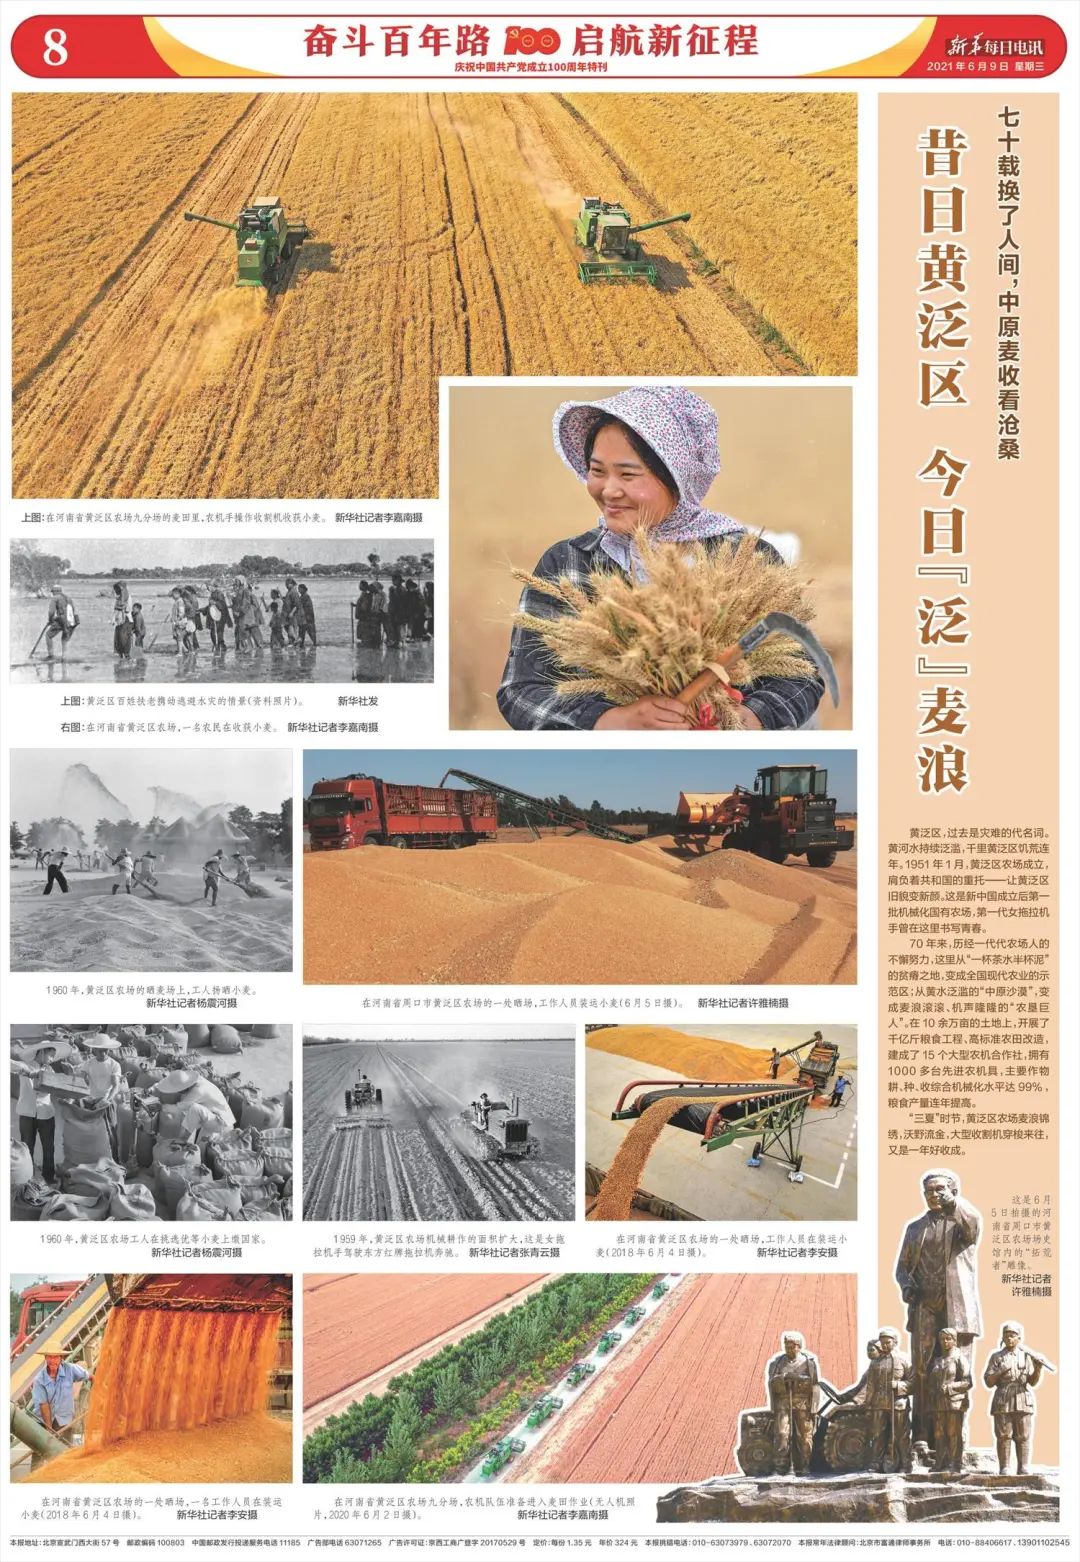 新华每日电讯这个专版被推荐参加建党百年新闻摄影展